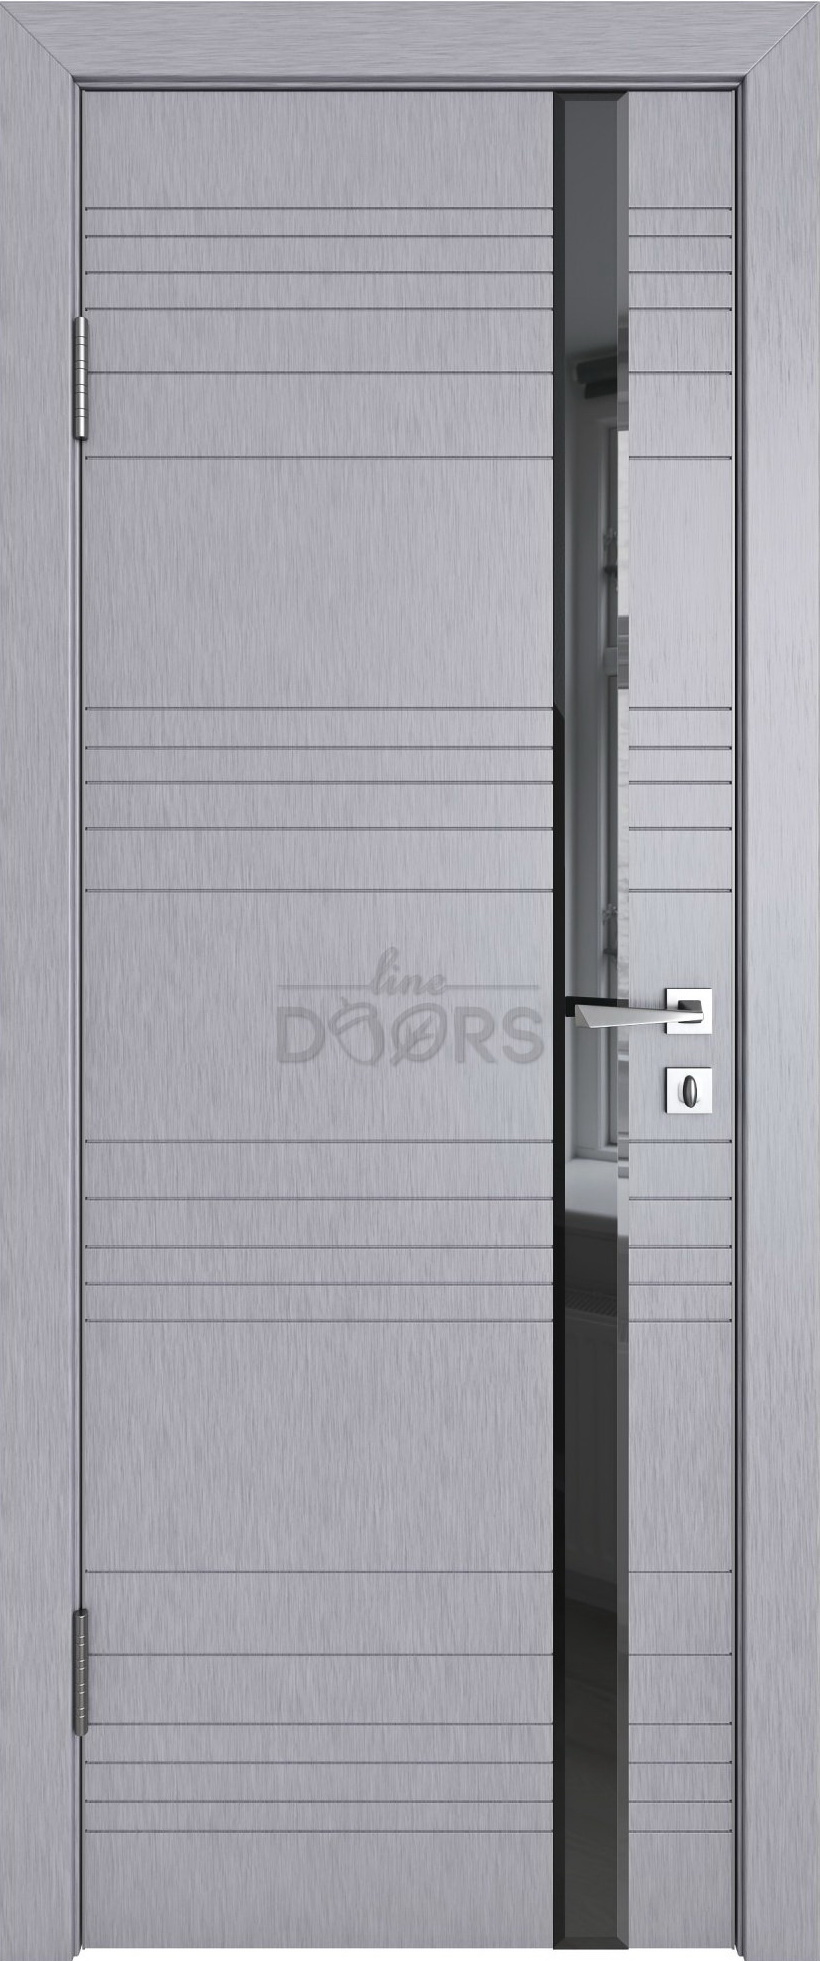 Линия дверей Межкомнатная дверь ДО 514 фацет, арт. 6852 - фото №3